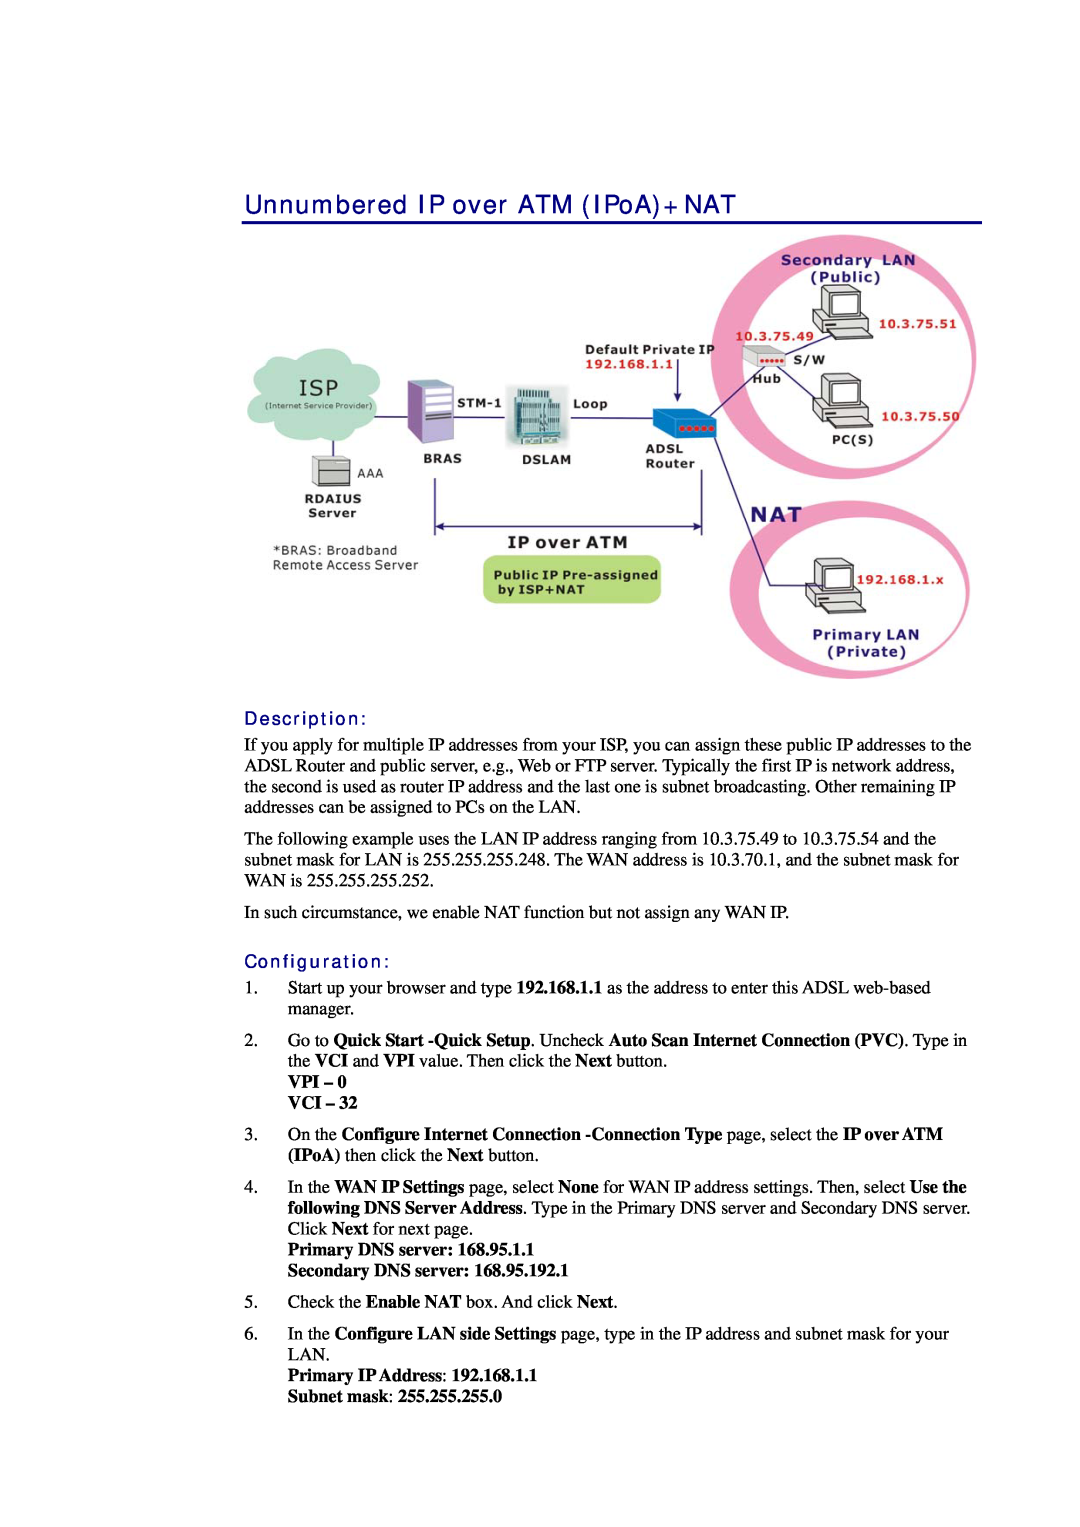 Siemens CL-010-I Unnumbered IP over ATM IPoA+NAT, Description, Configuration, VPI - 0 VCI, Primary IP Address Subnet mask 